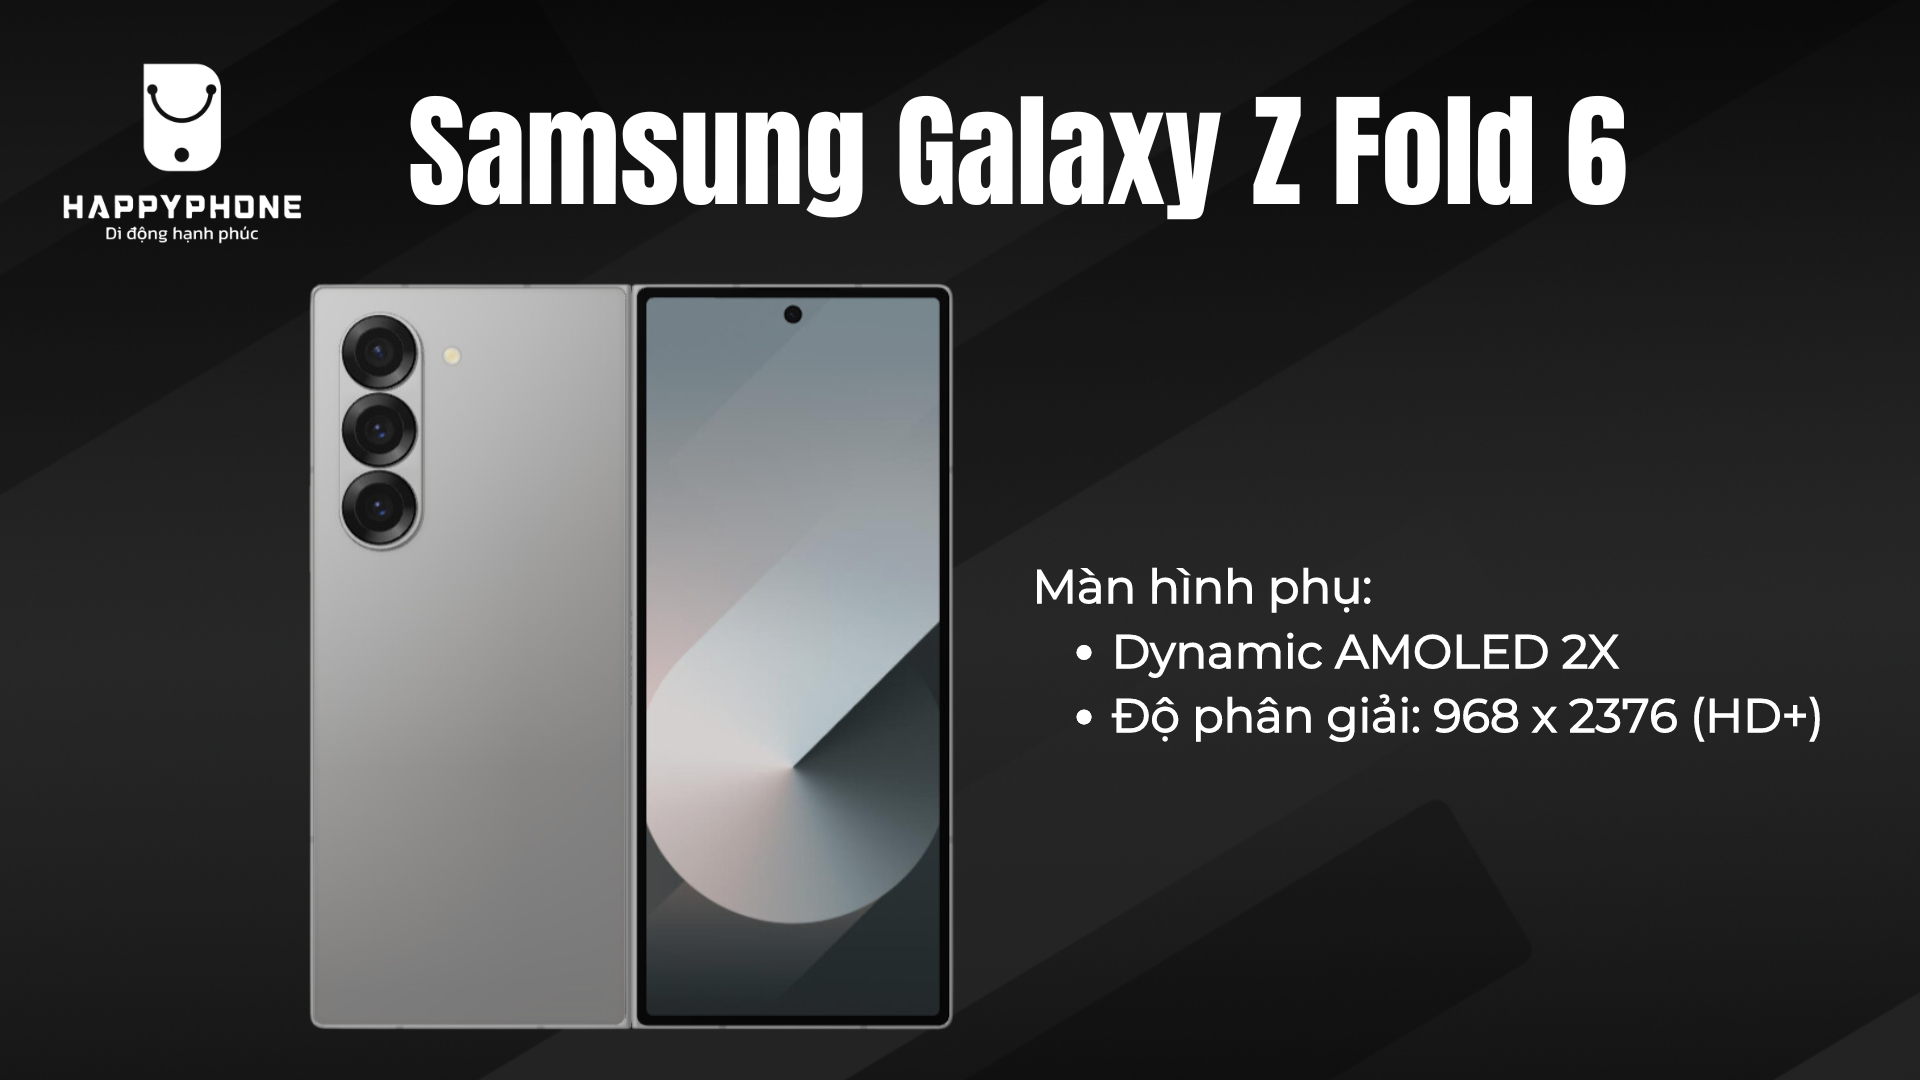 Màn hình phụ của Galaxy Z Fold 6